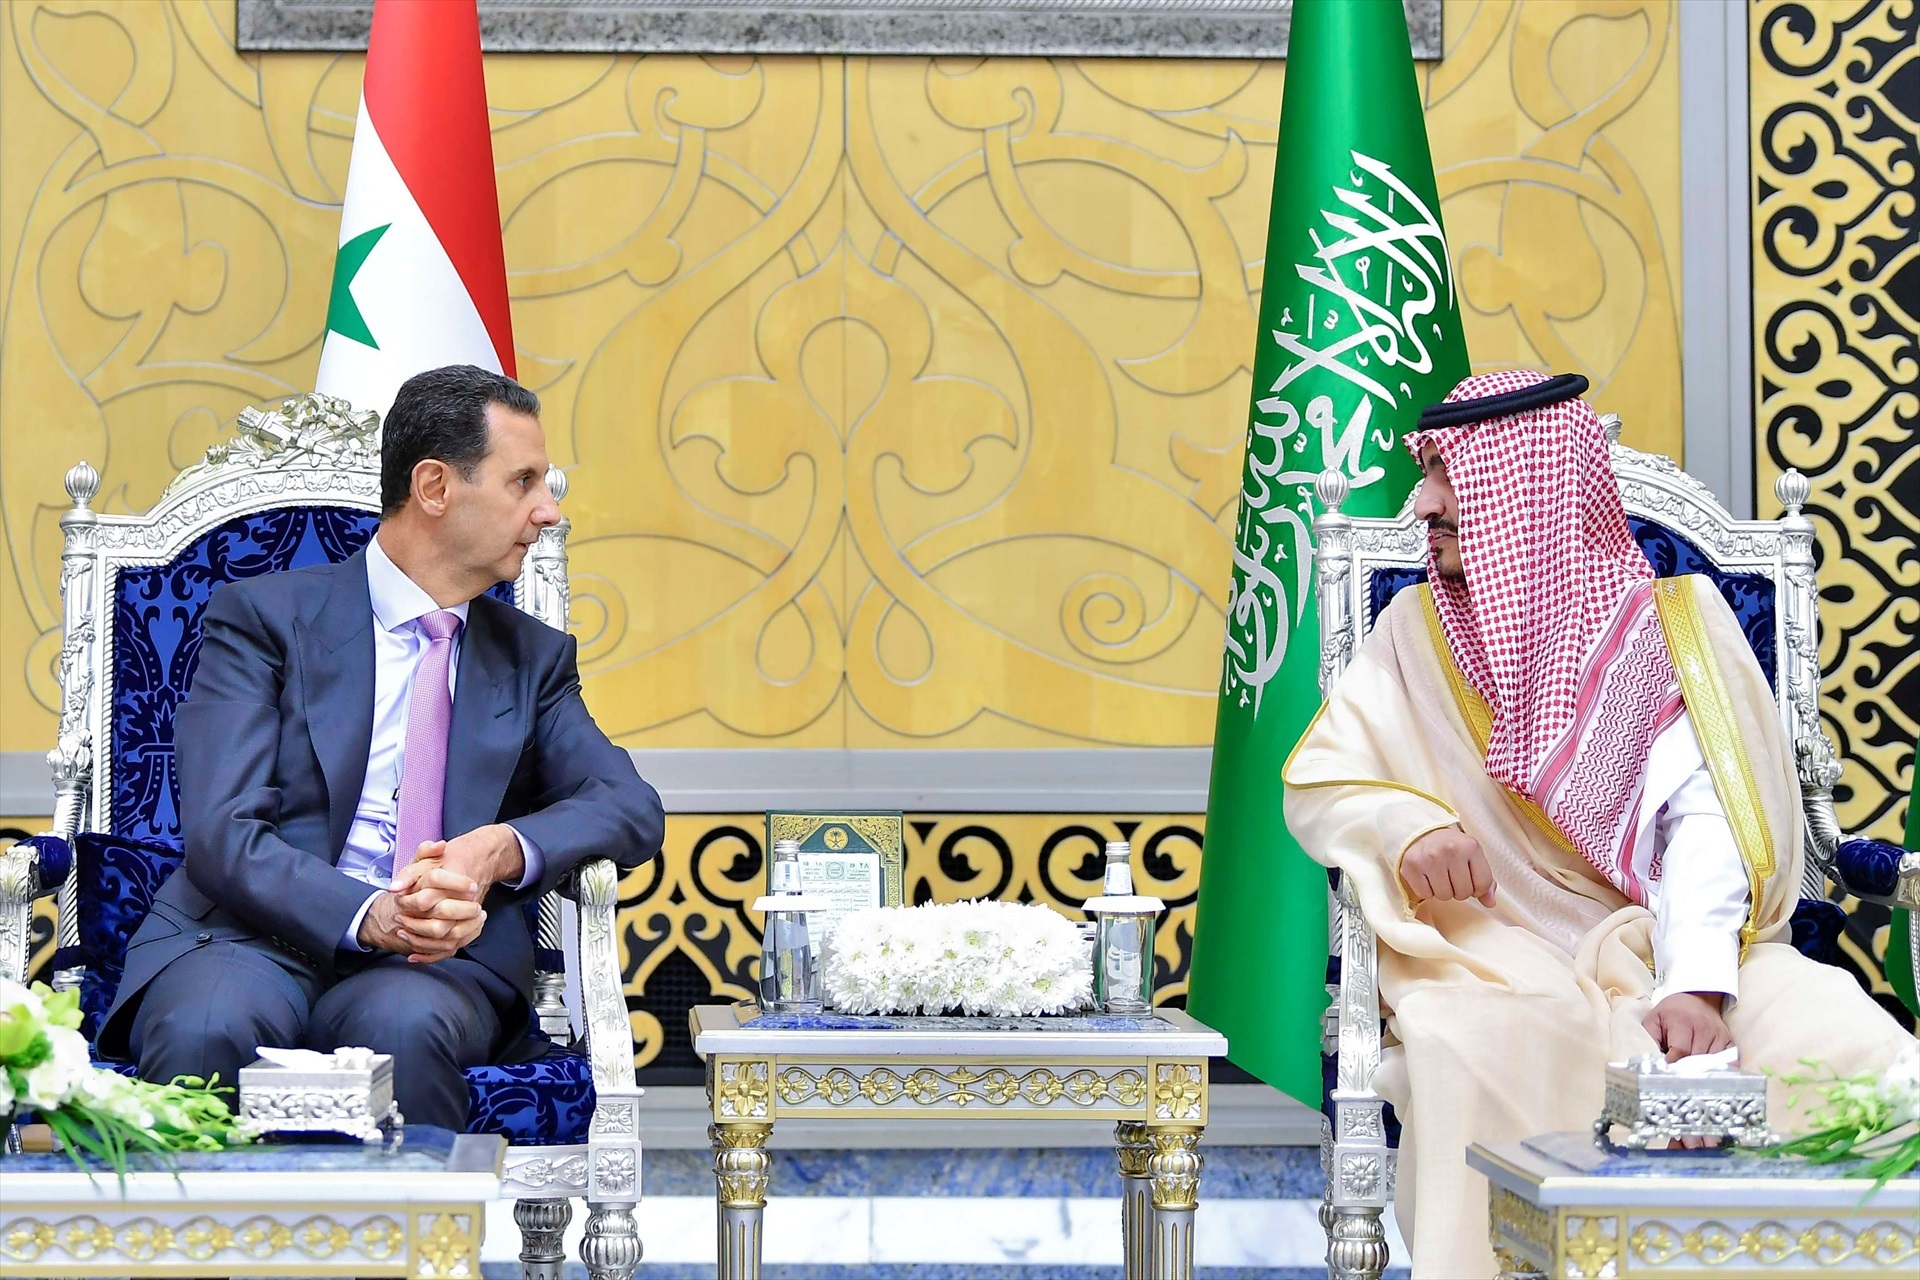 El presidente sirio Bashar al Assad SE reúne con el gobernador de la región de La Meca Badr bin Sultan bin Abdulaziz Al Saud celebrada en la Cumbre árabe de 2023. -MOSA AL KATHAMI /Saudi Press Agency